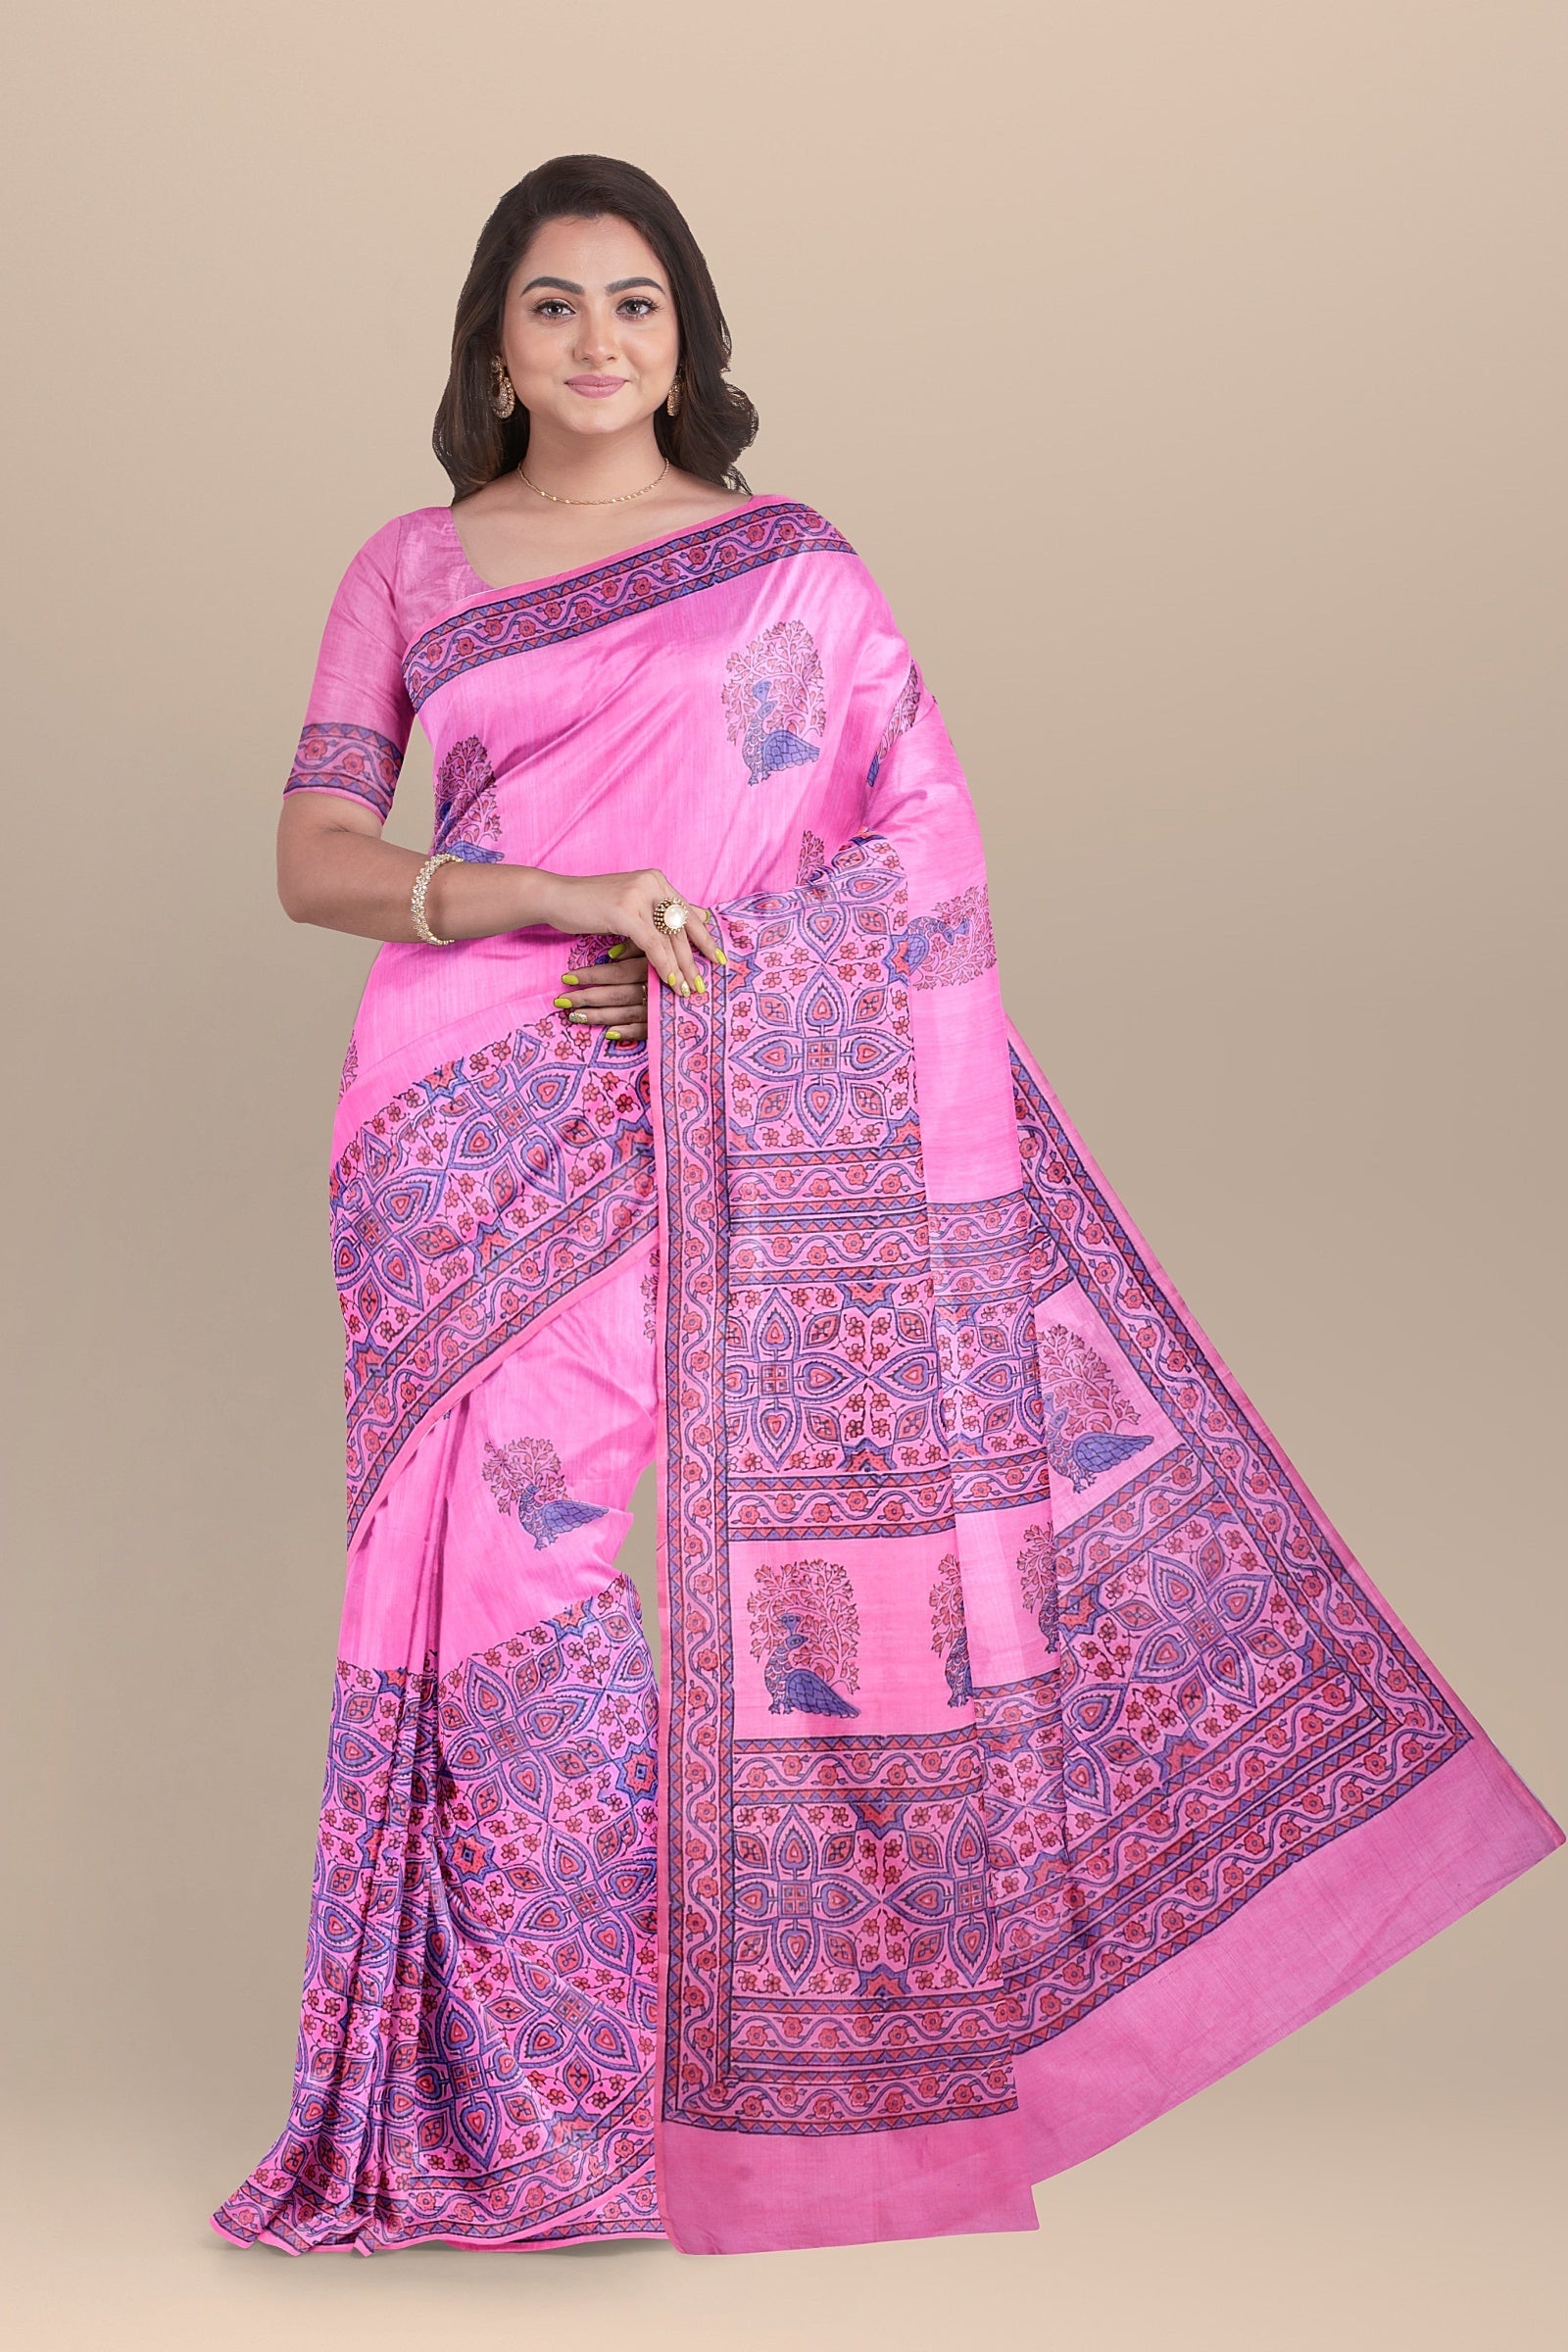 Handwoven Hand Block Printed Pink Sausar Silk Saree With Multicolor Bird Motif SKU-AS10035 - Bhartiya Shilp